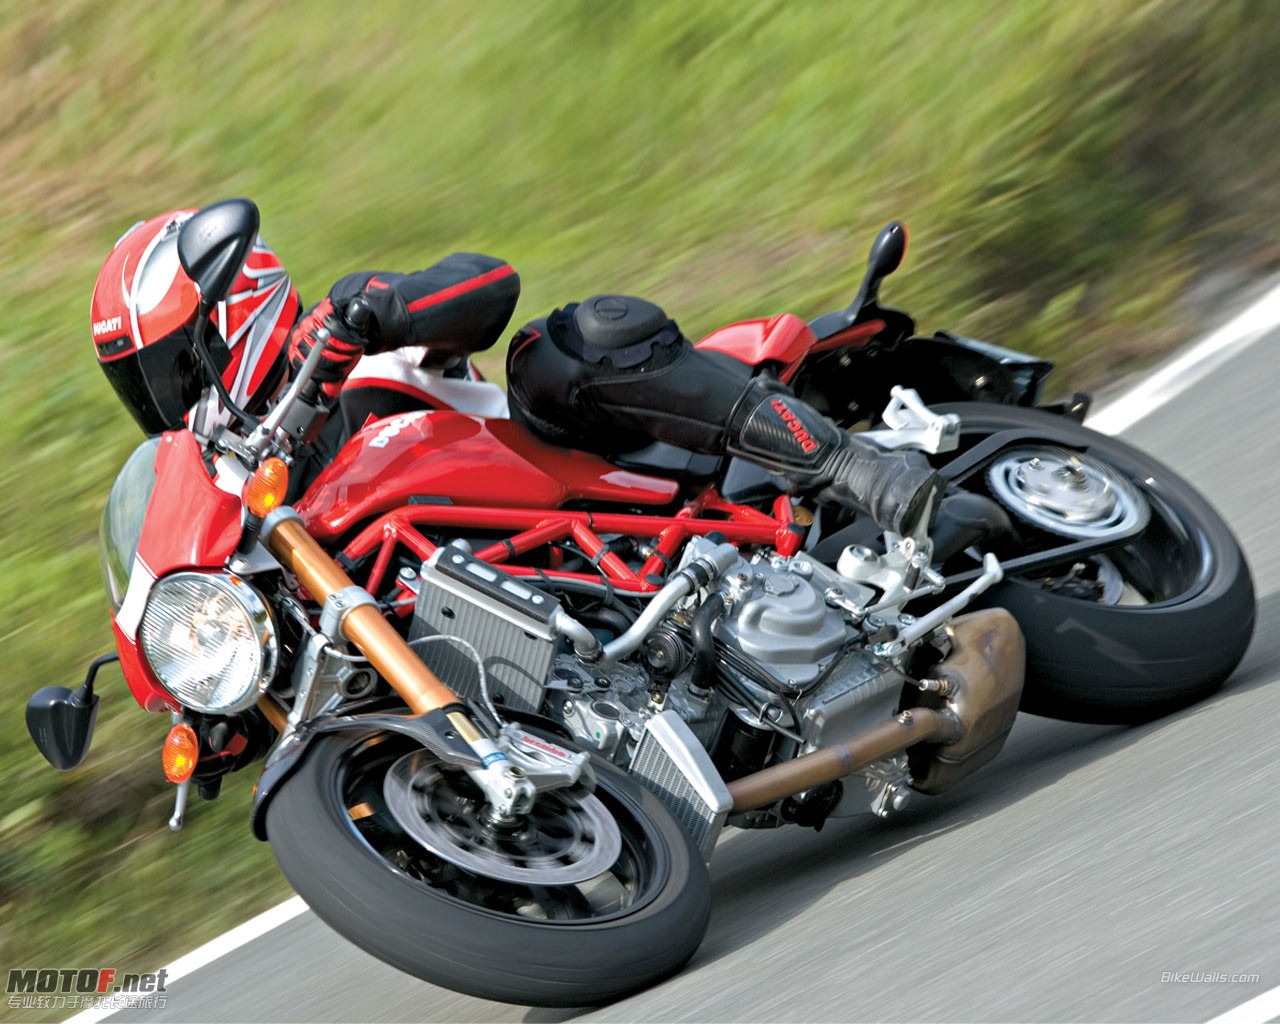 Ducati_Monster_S4Rs_10_1280x1024.jpg